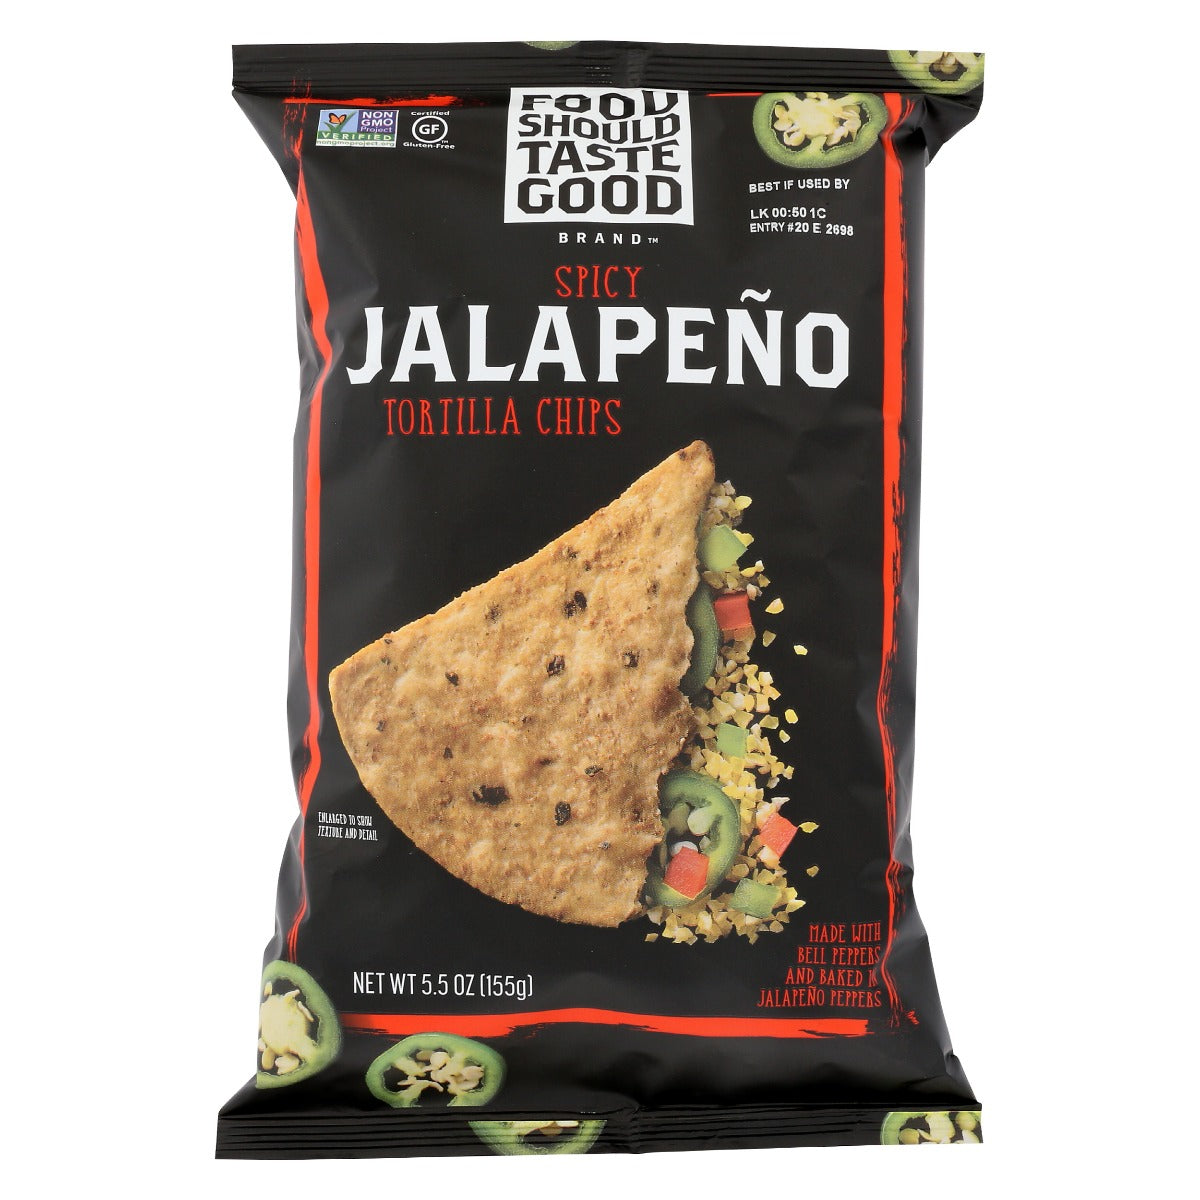 FOOD SHOULD TASTE GOOD: All Natural Tortilla Chips Jalapeno, 5.5 oz - Vending Business Solutions